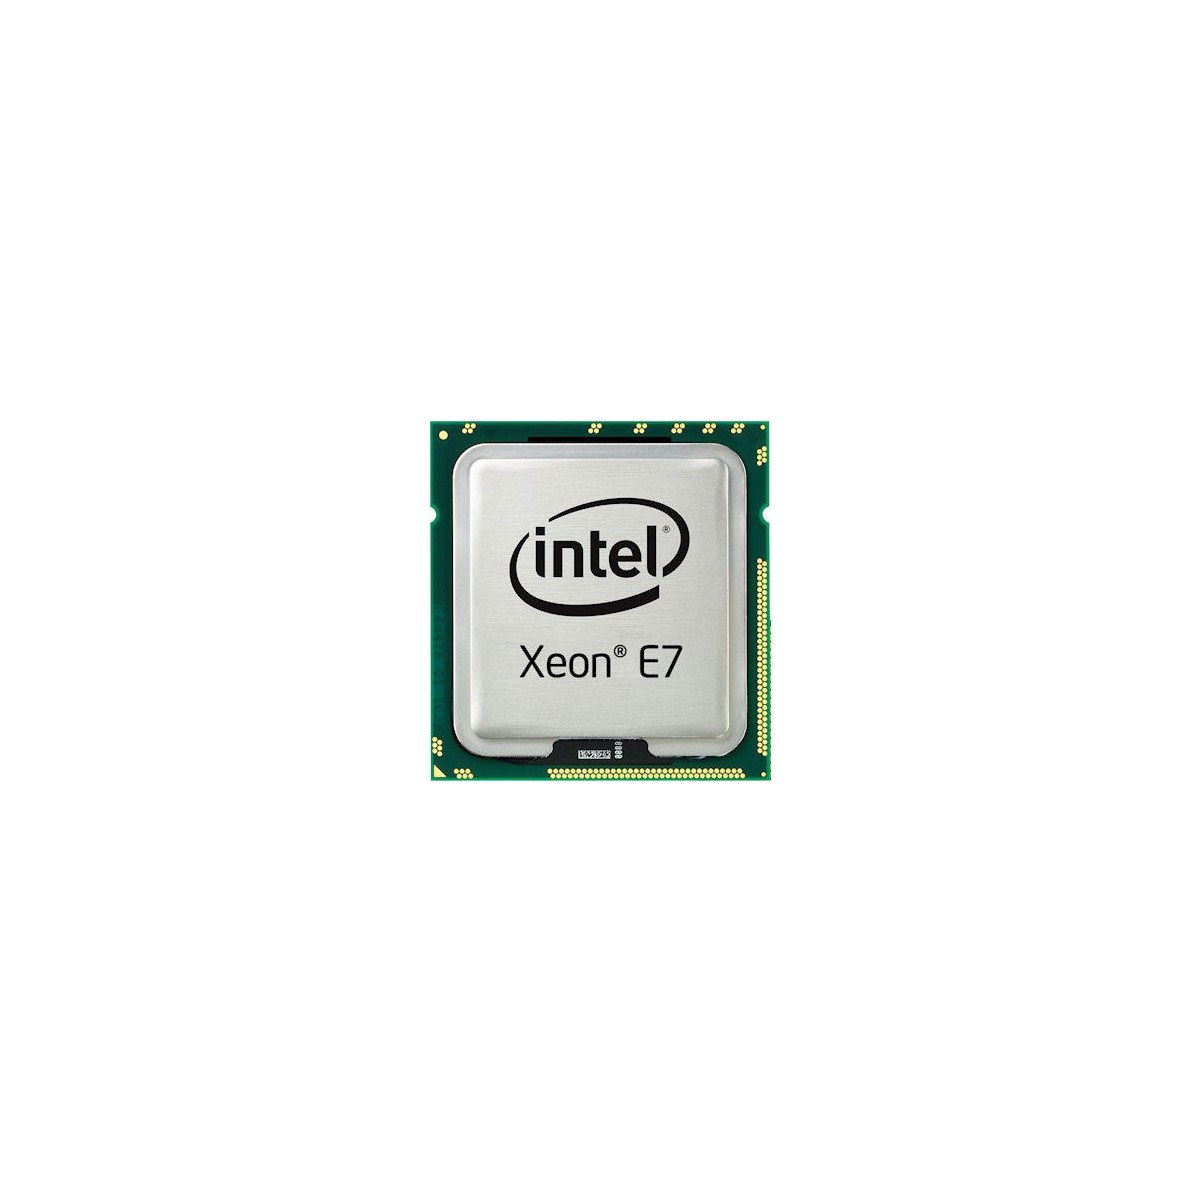 HPE HP DL580 Gen9 E7-4809 v3 1P Kit - Xeon E7 - 2 GHz